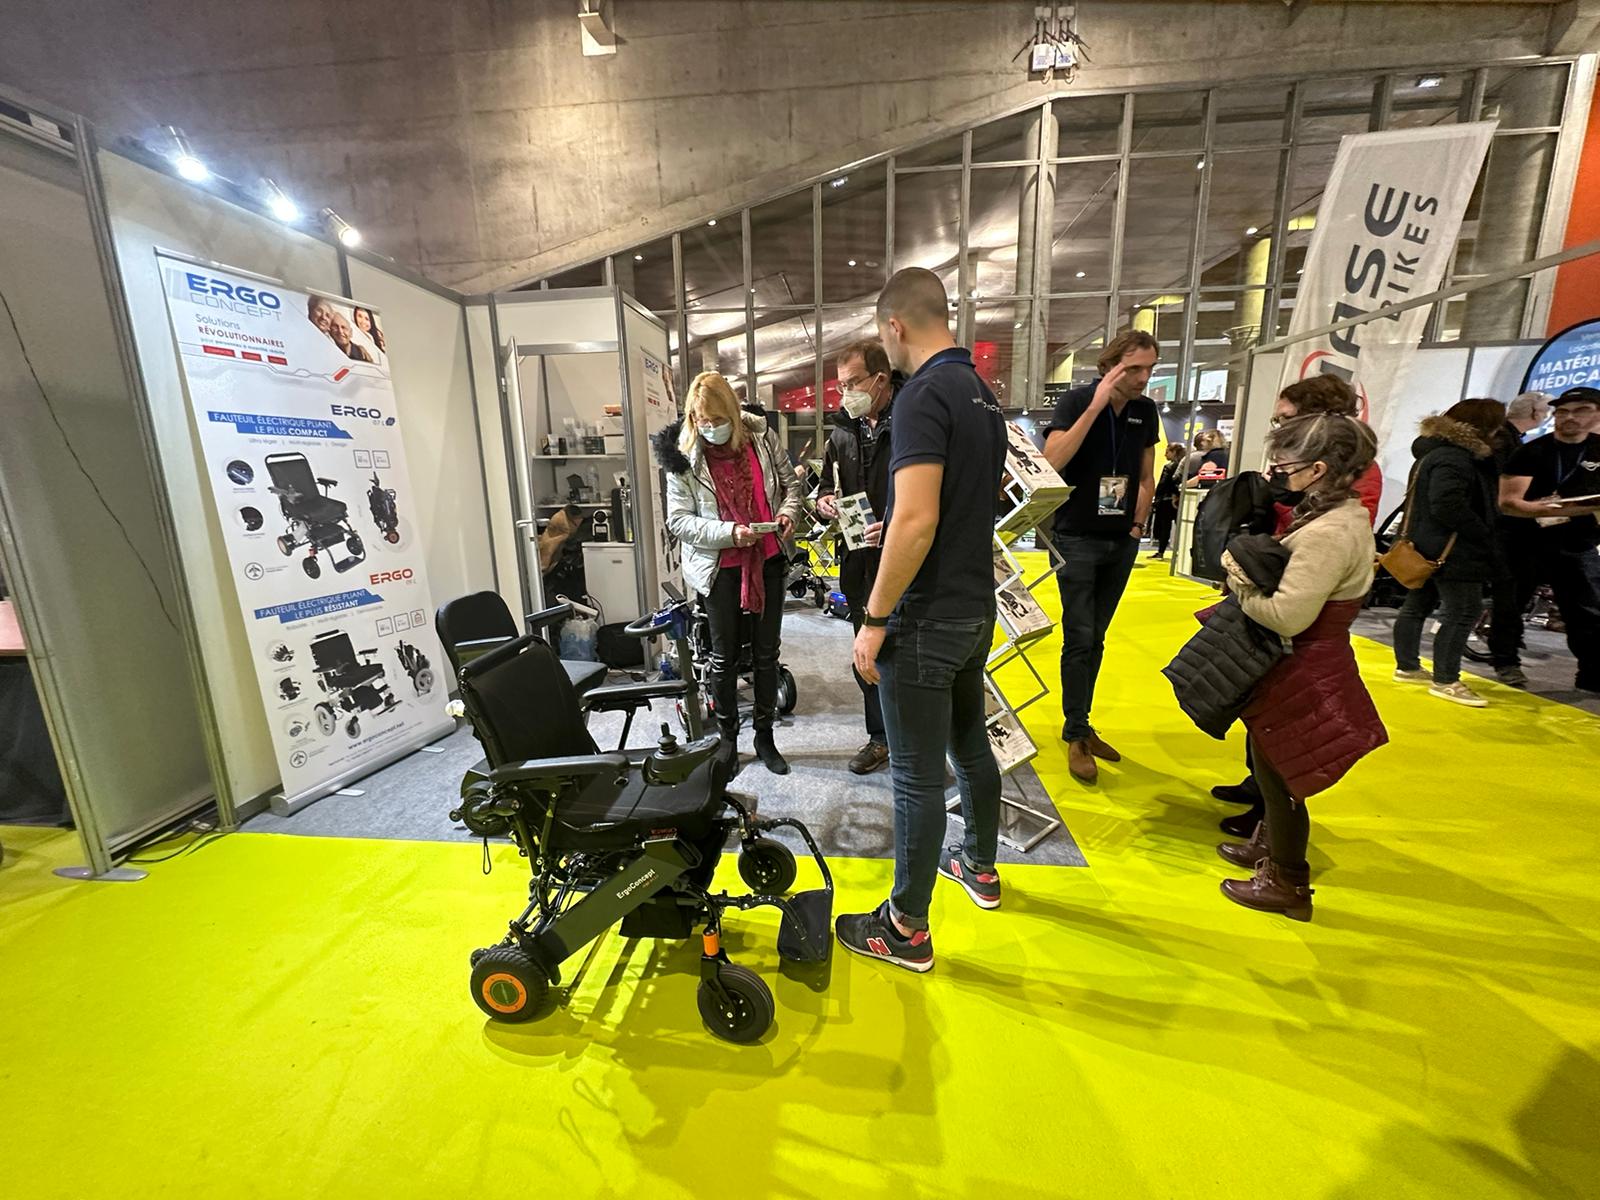 Scooter électrique handicapé pliable Ergo MOJO - Medical Domicile